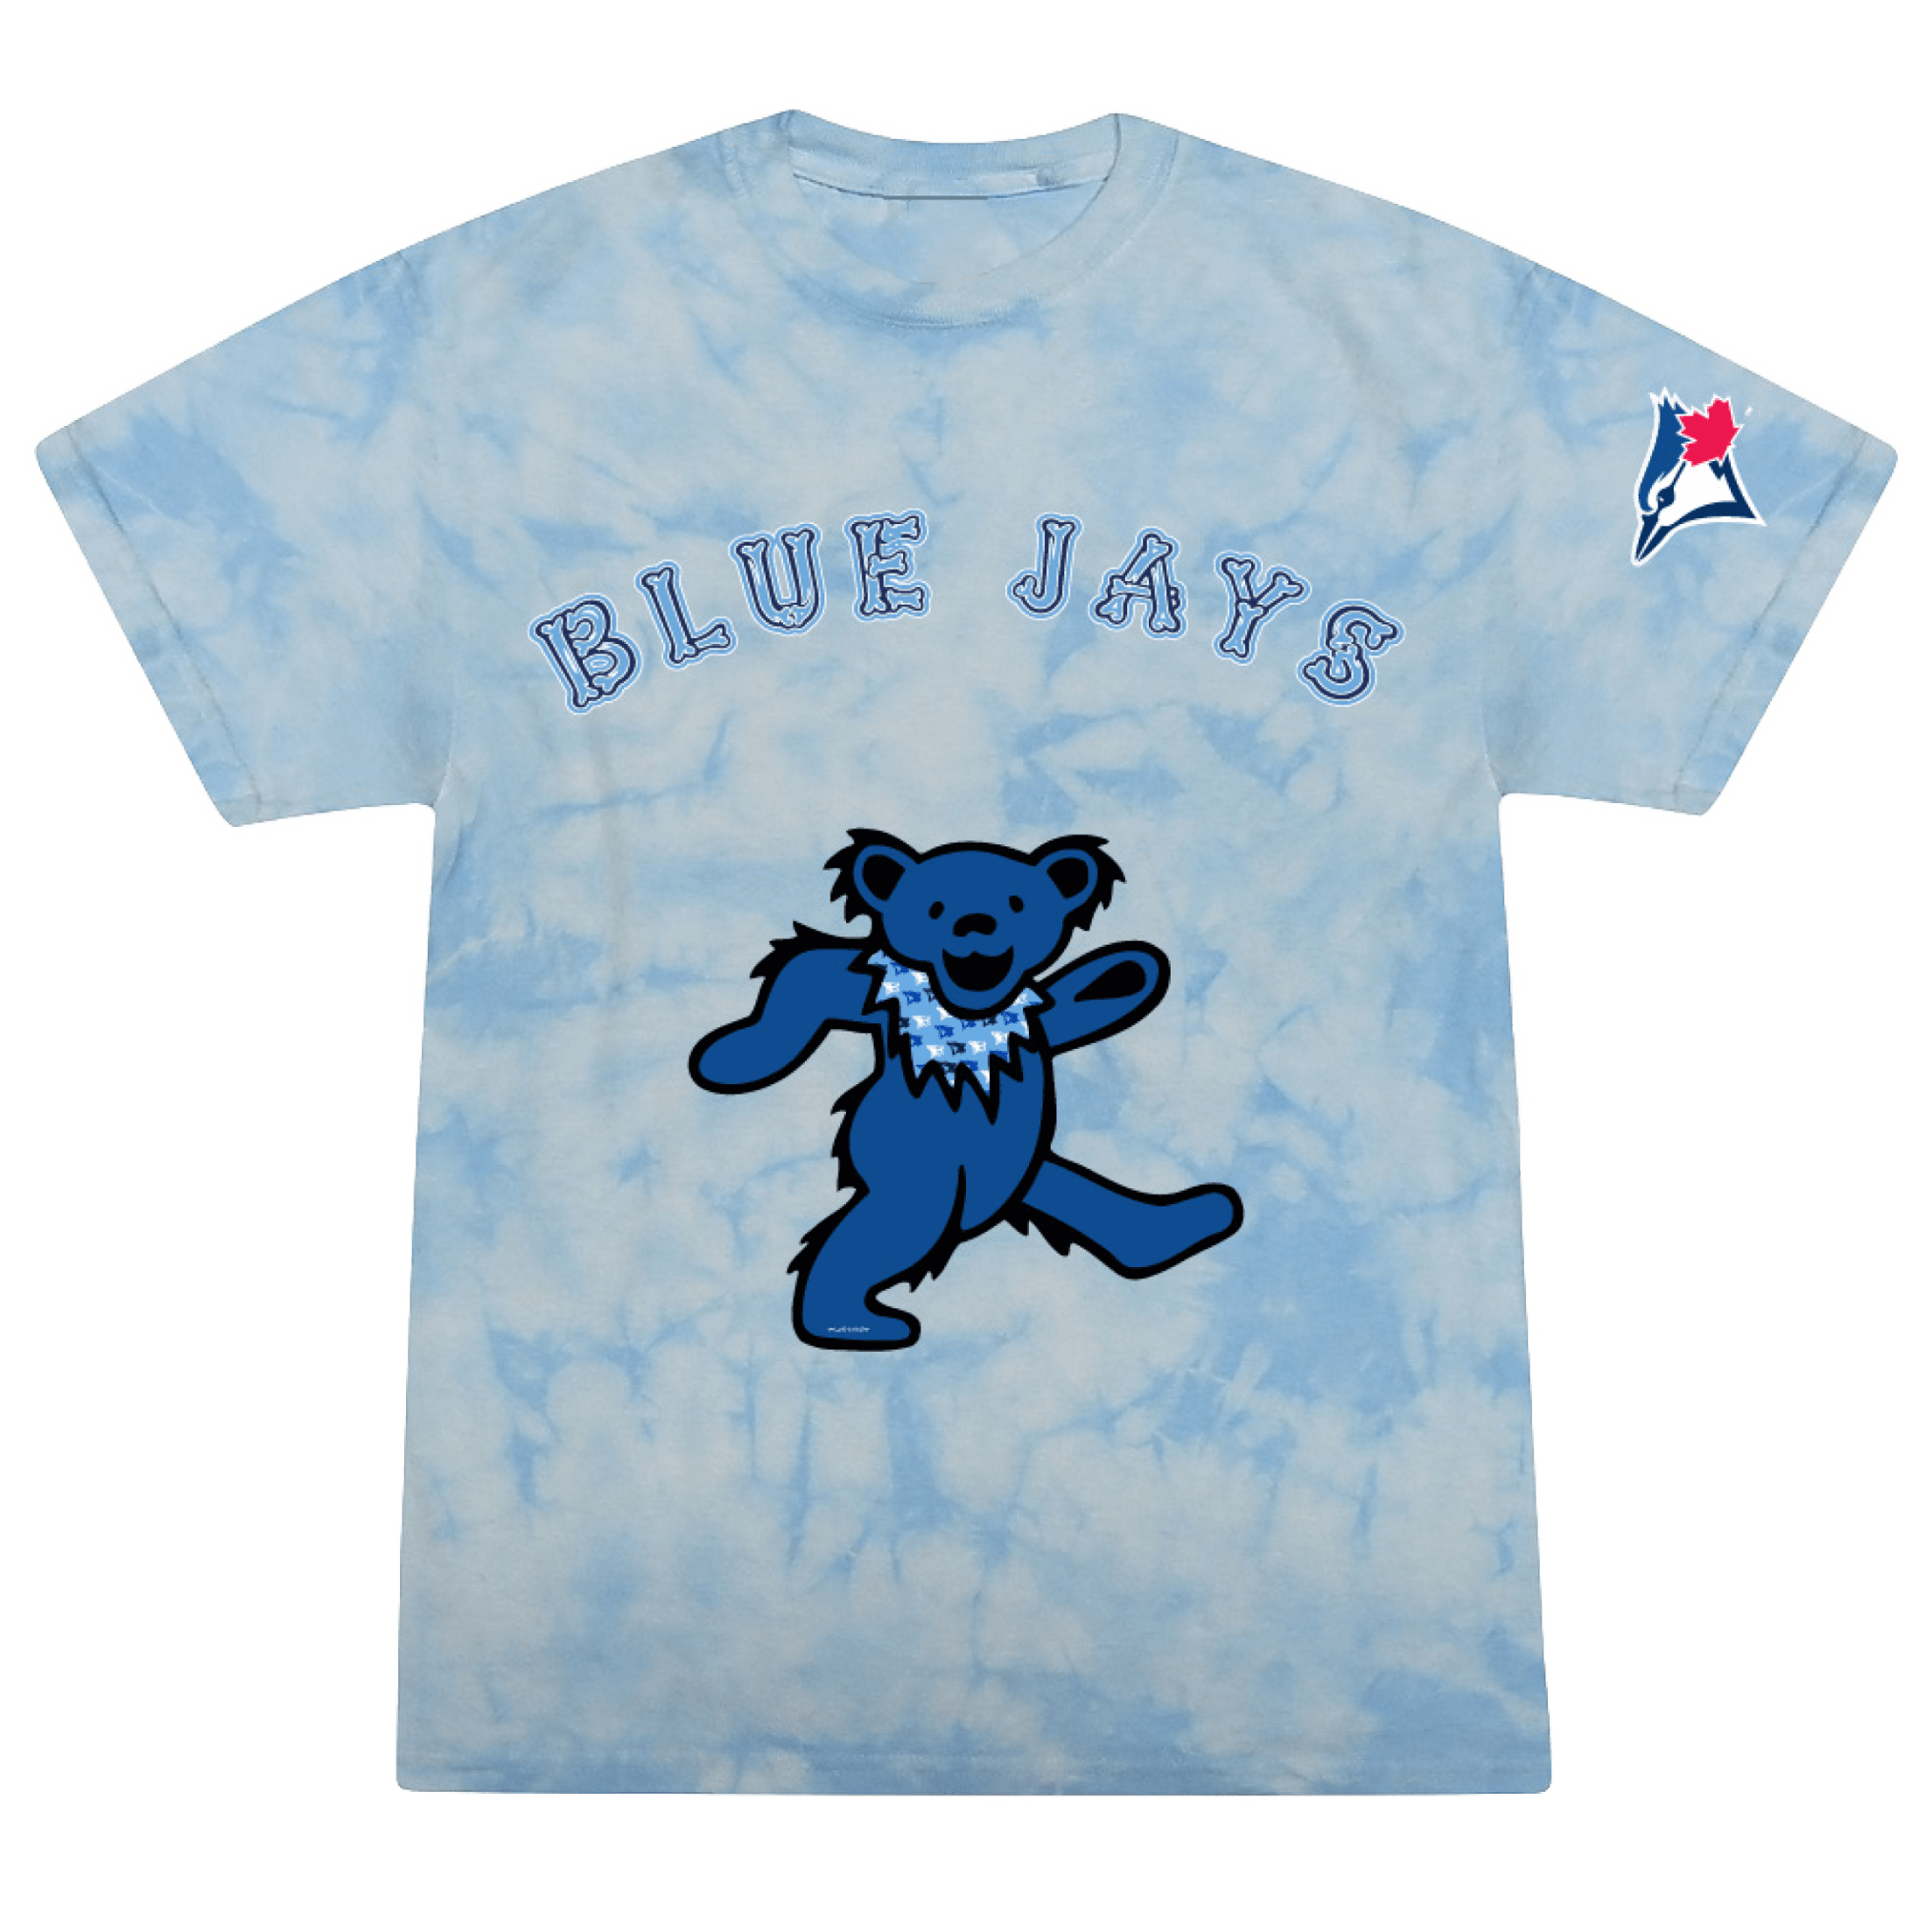 Grateful Dead X StLouis Blues shirt